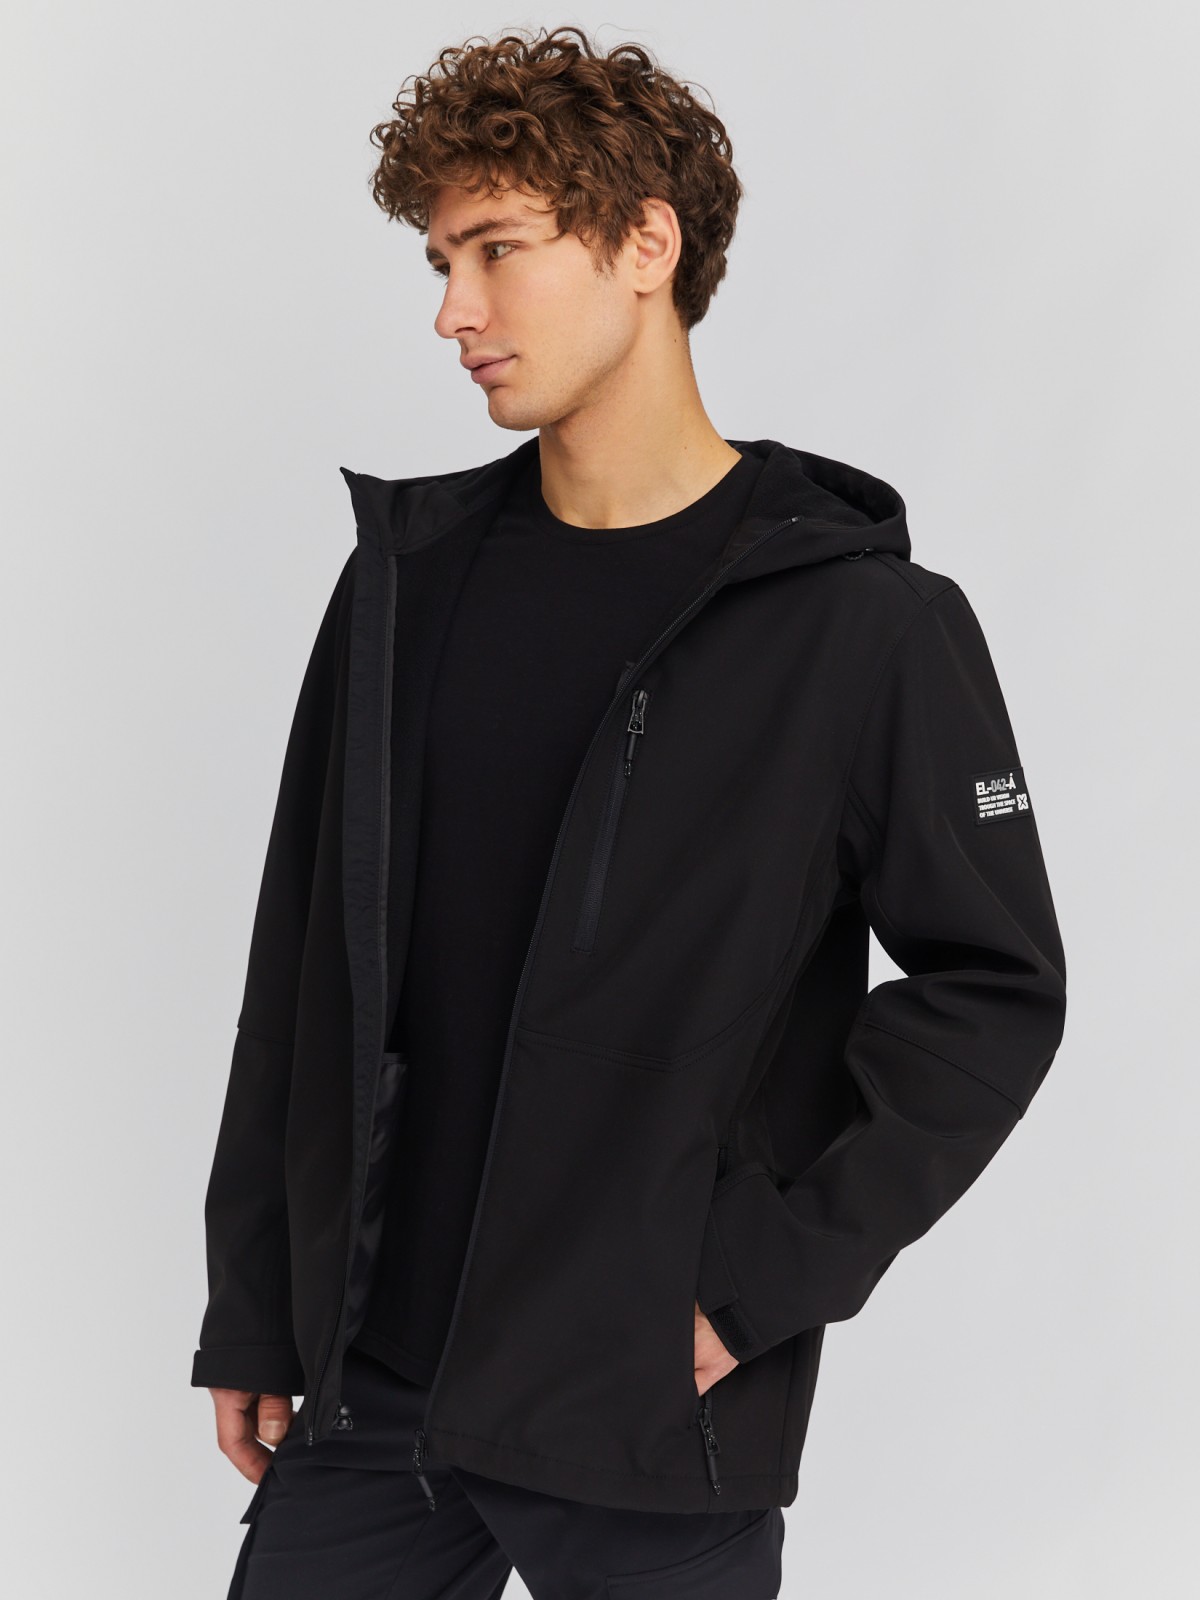 Лёгкая куртка-ветровка с капюшоном zolla 014135602014, цвет черный, размер M